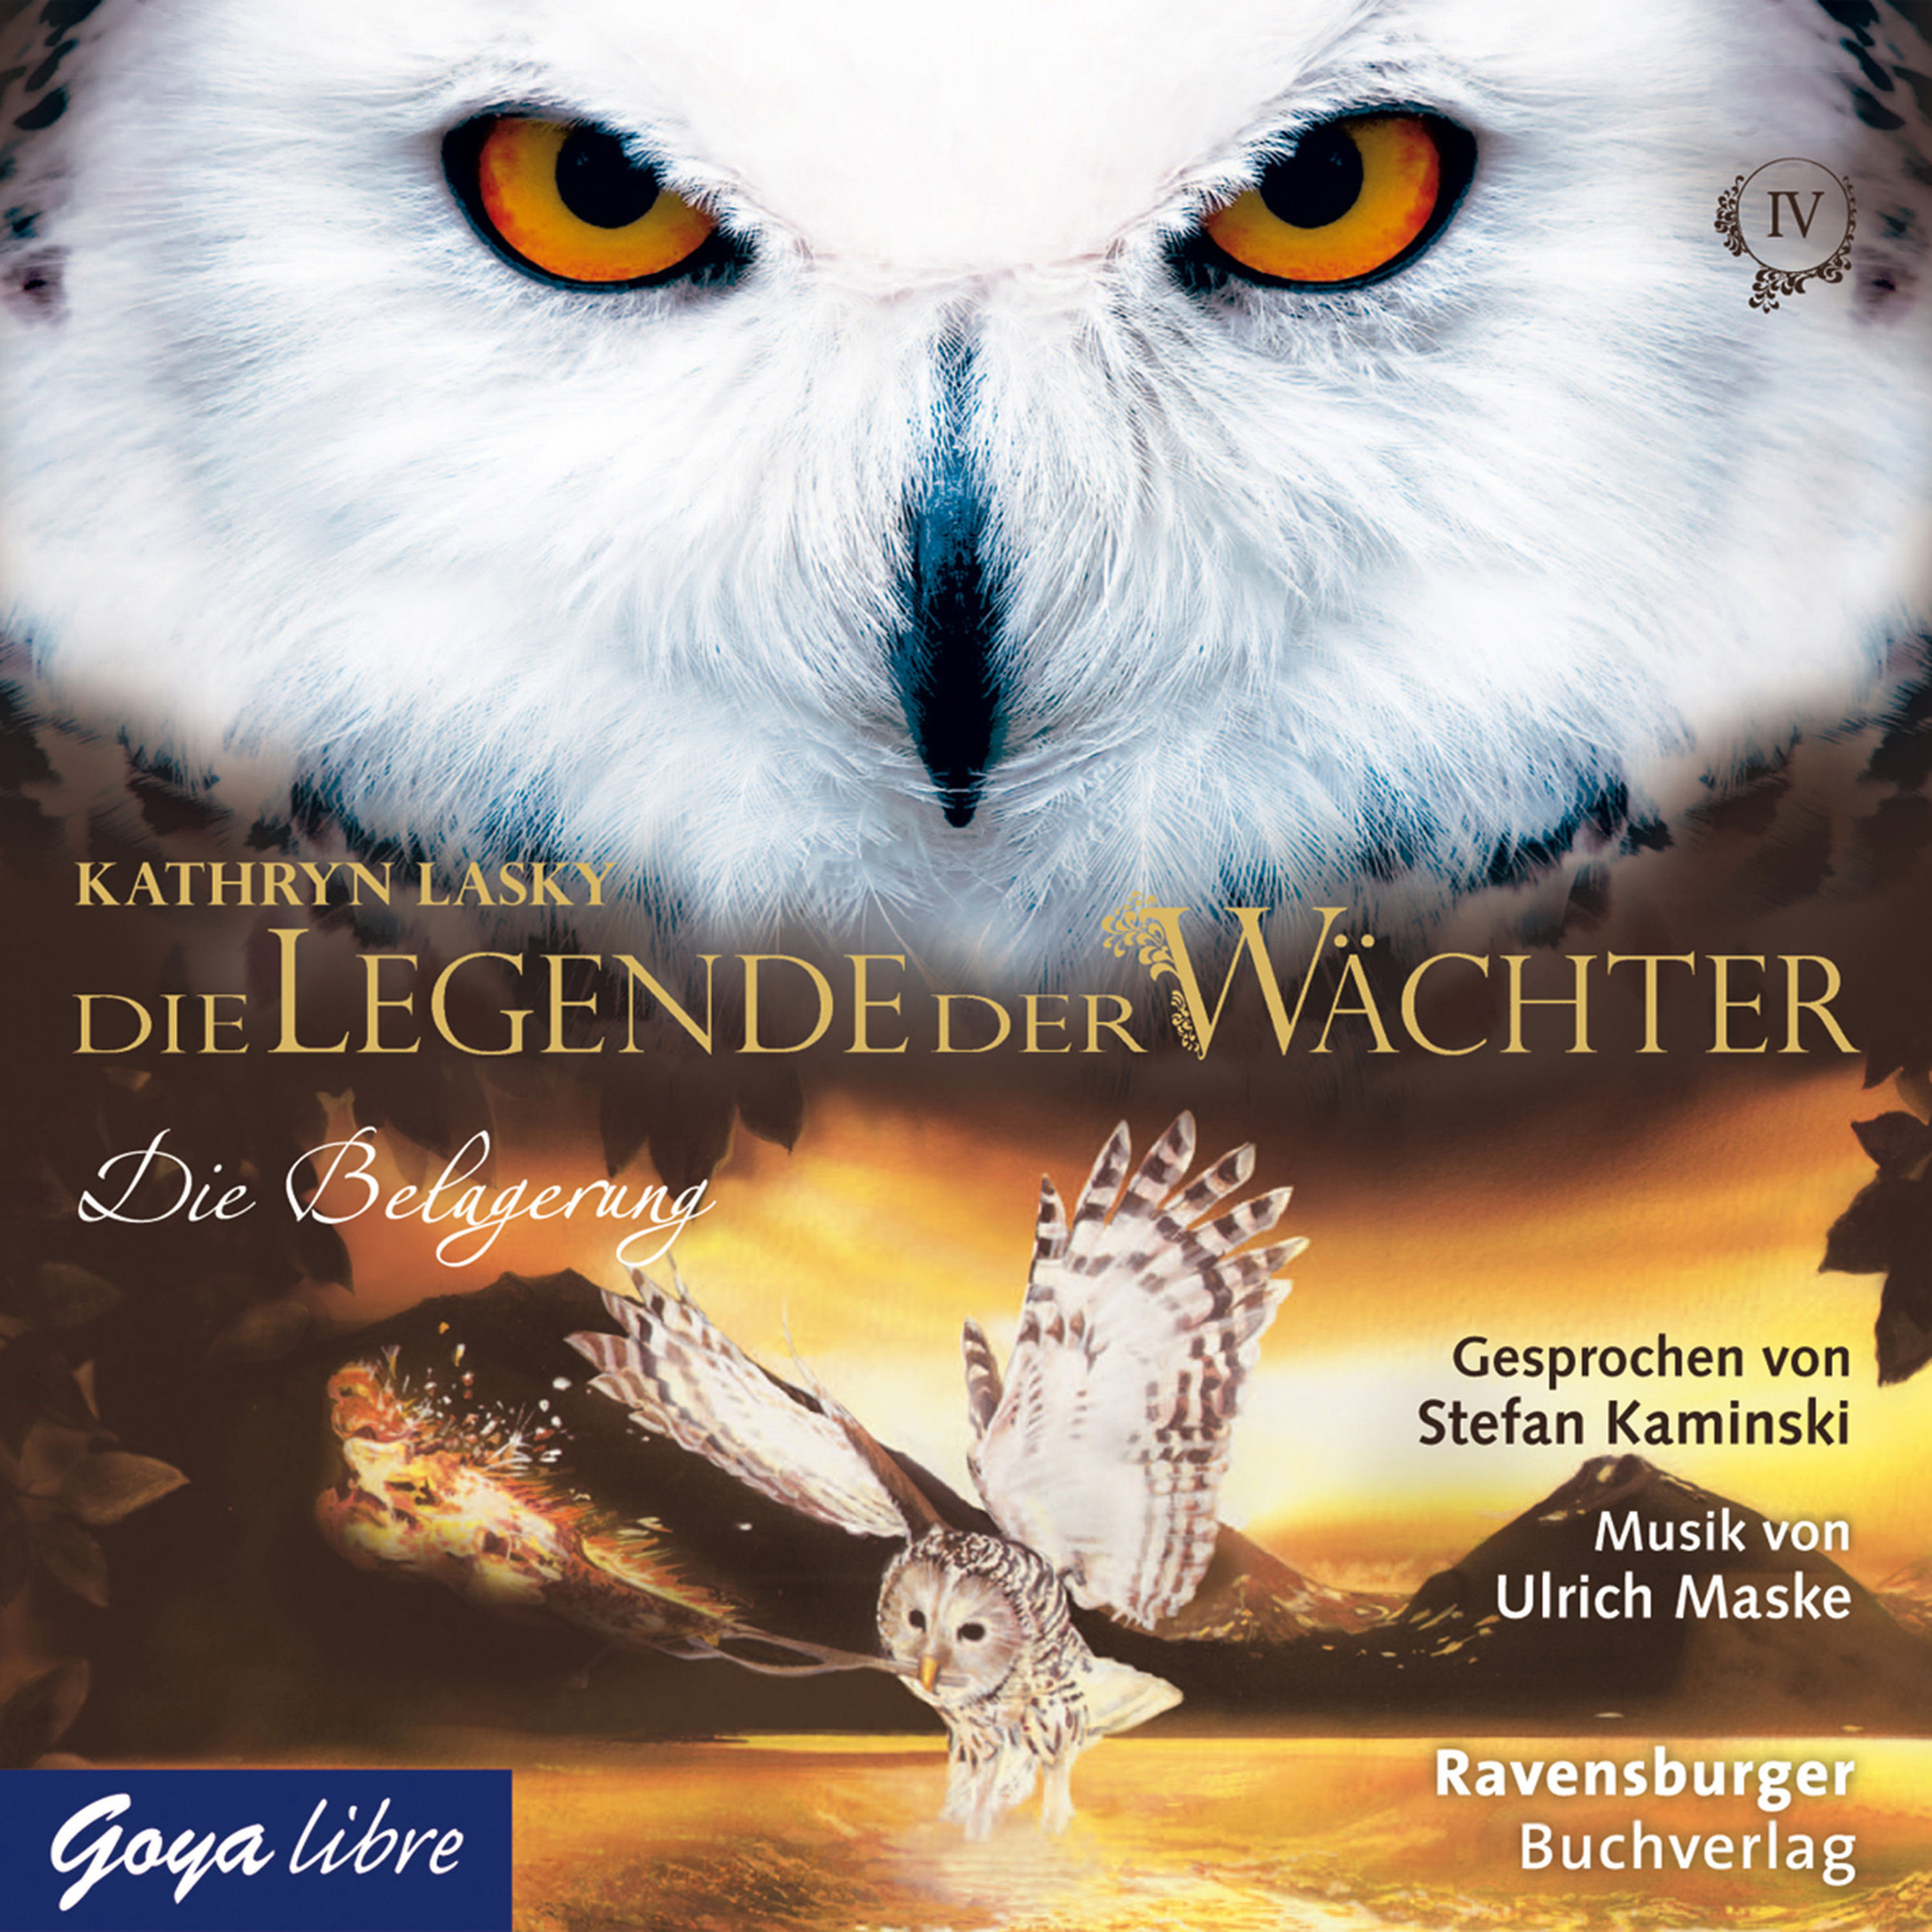 Die Legende der Wächter - 4 - Die Legende der Wächter. Die Belagerung [4]  Hörbuch Download